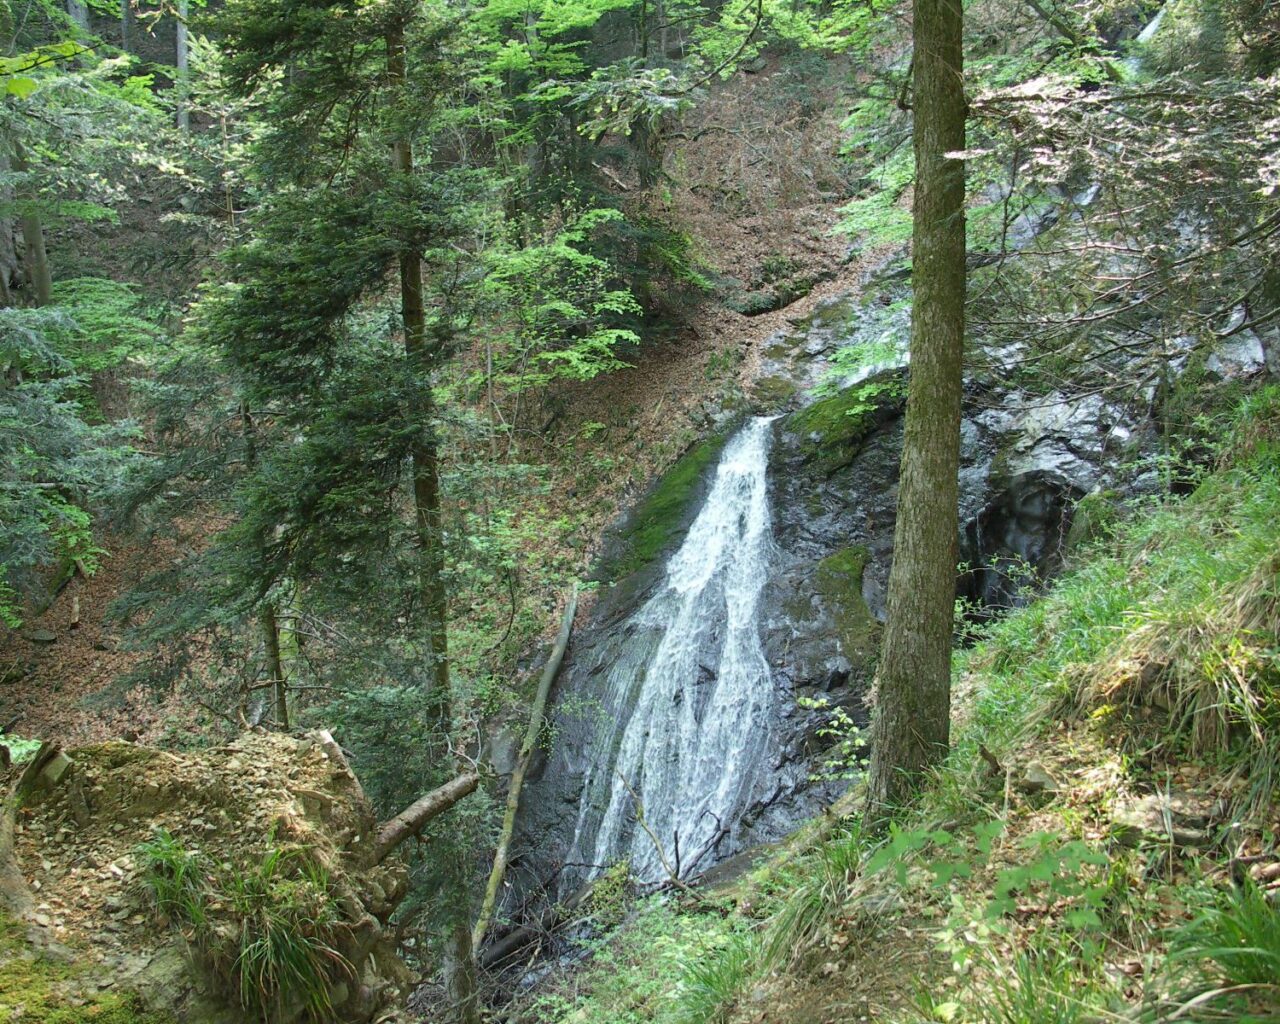 13 La cascade dévale les rochers d'une paroi dans un agréable site forestier.